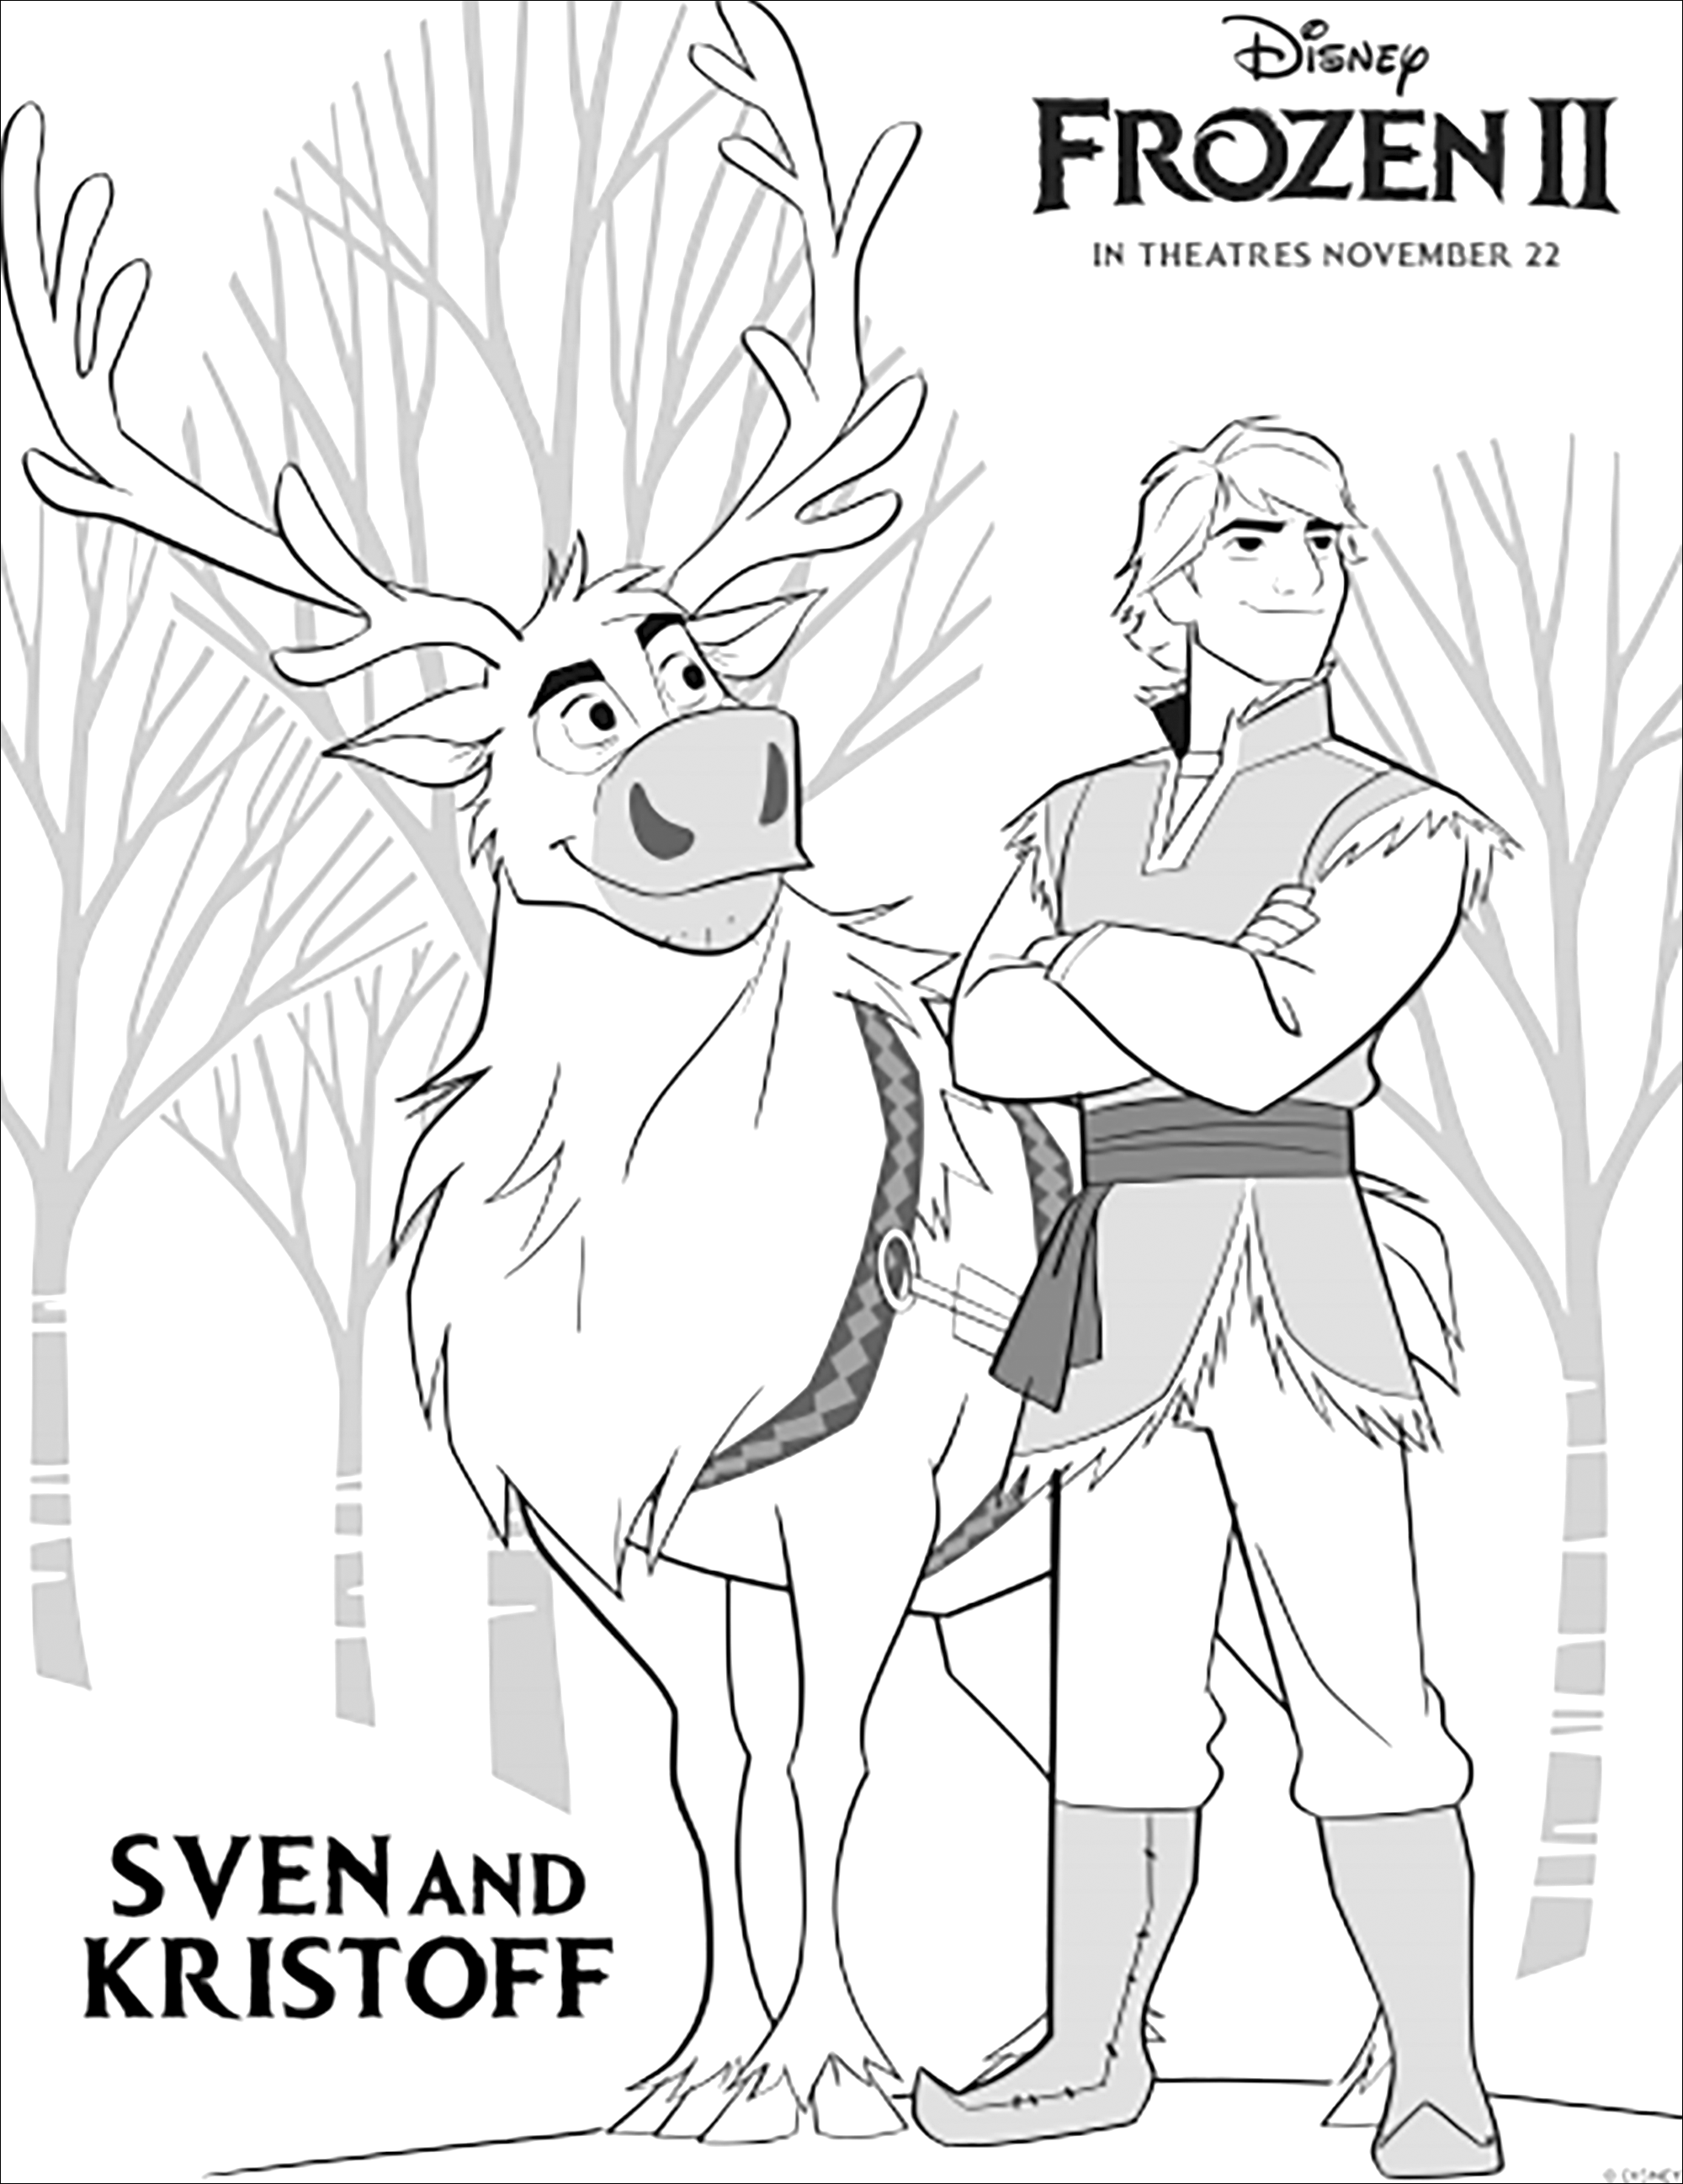 Kristoff y el reno Sven regresan en Frozen 2 de Disney (versión con texto)